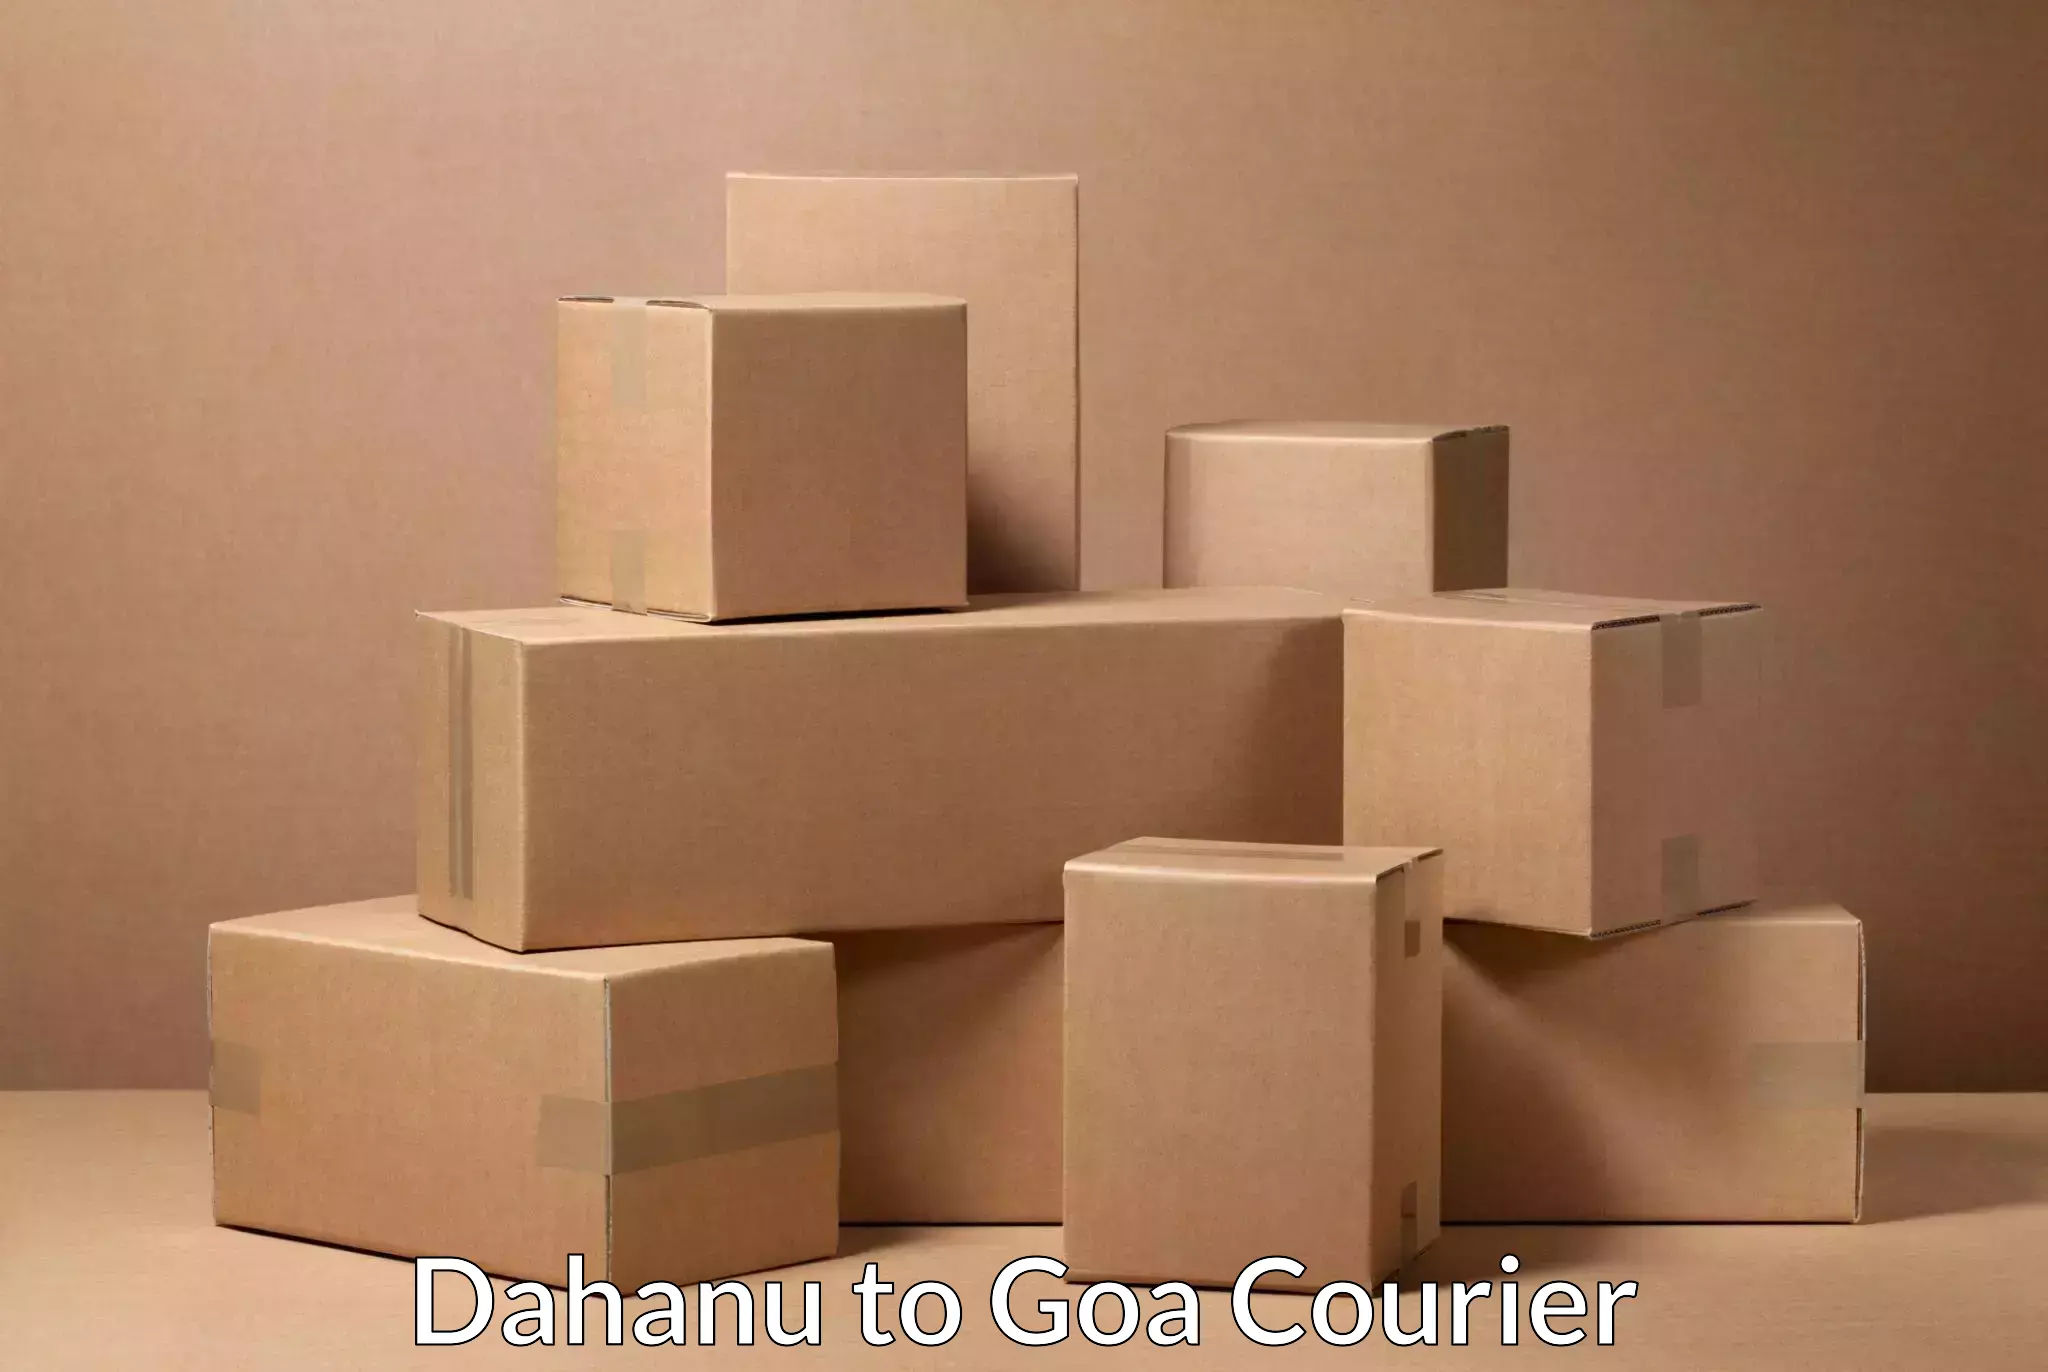 Small business couriers Dahanu to Vasco da Gama